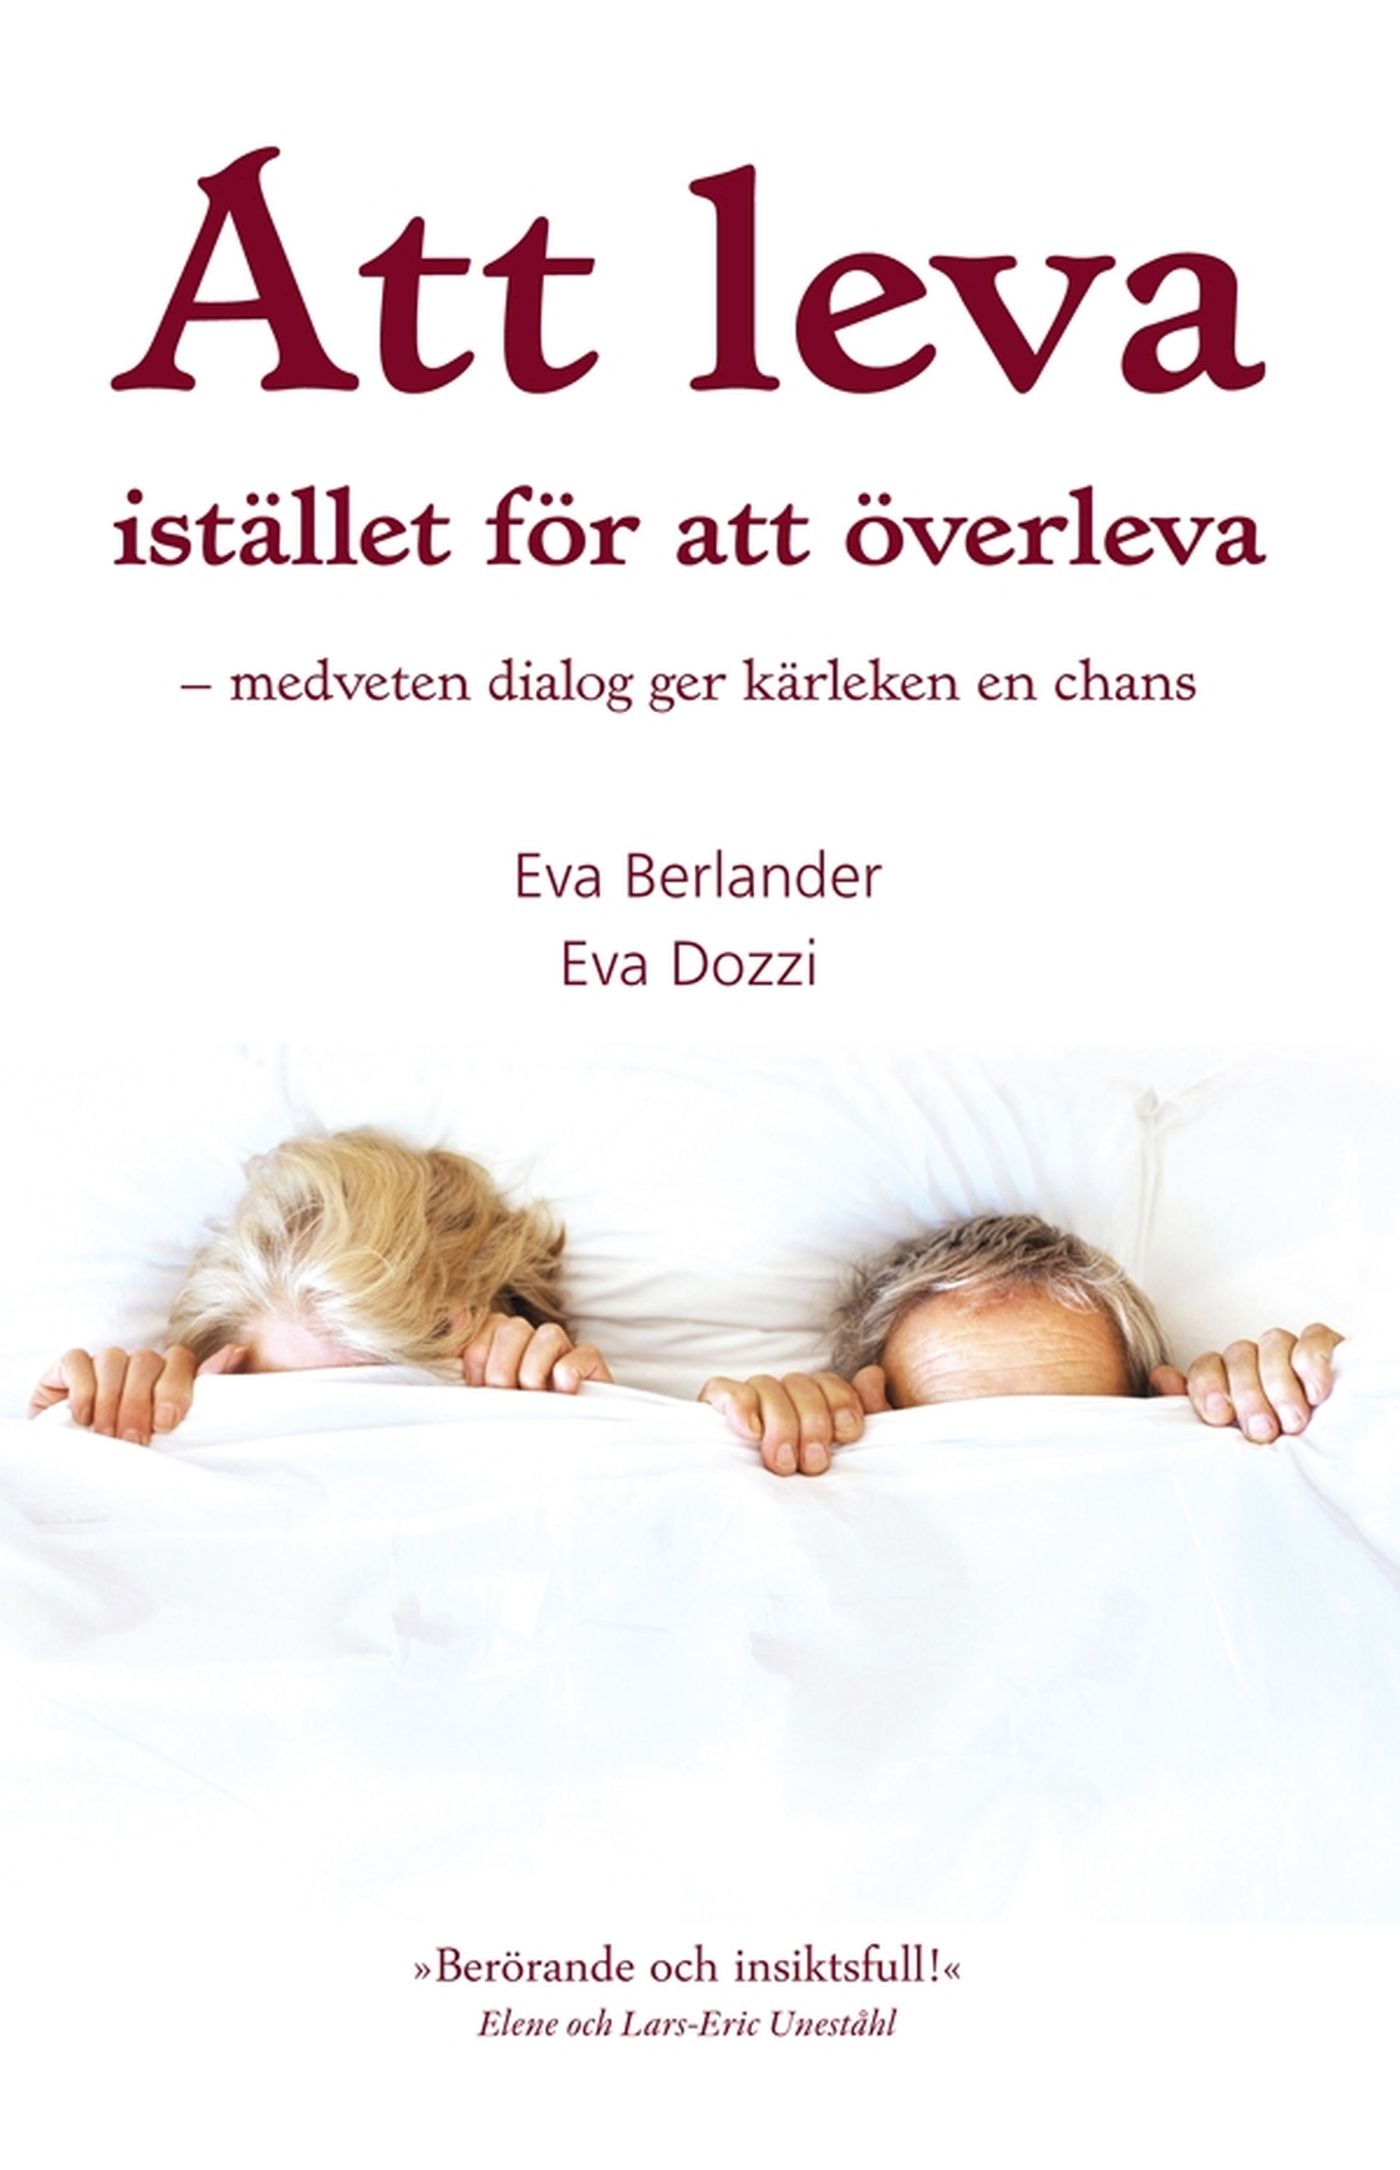 Att leva istället för att överleva, eBook by Eva Berlander